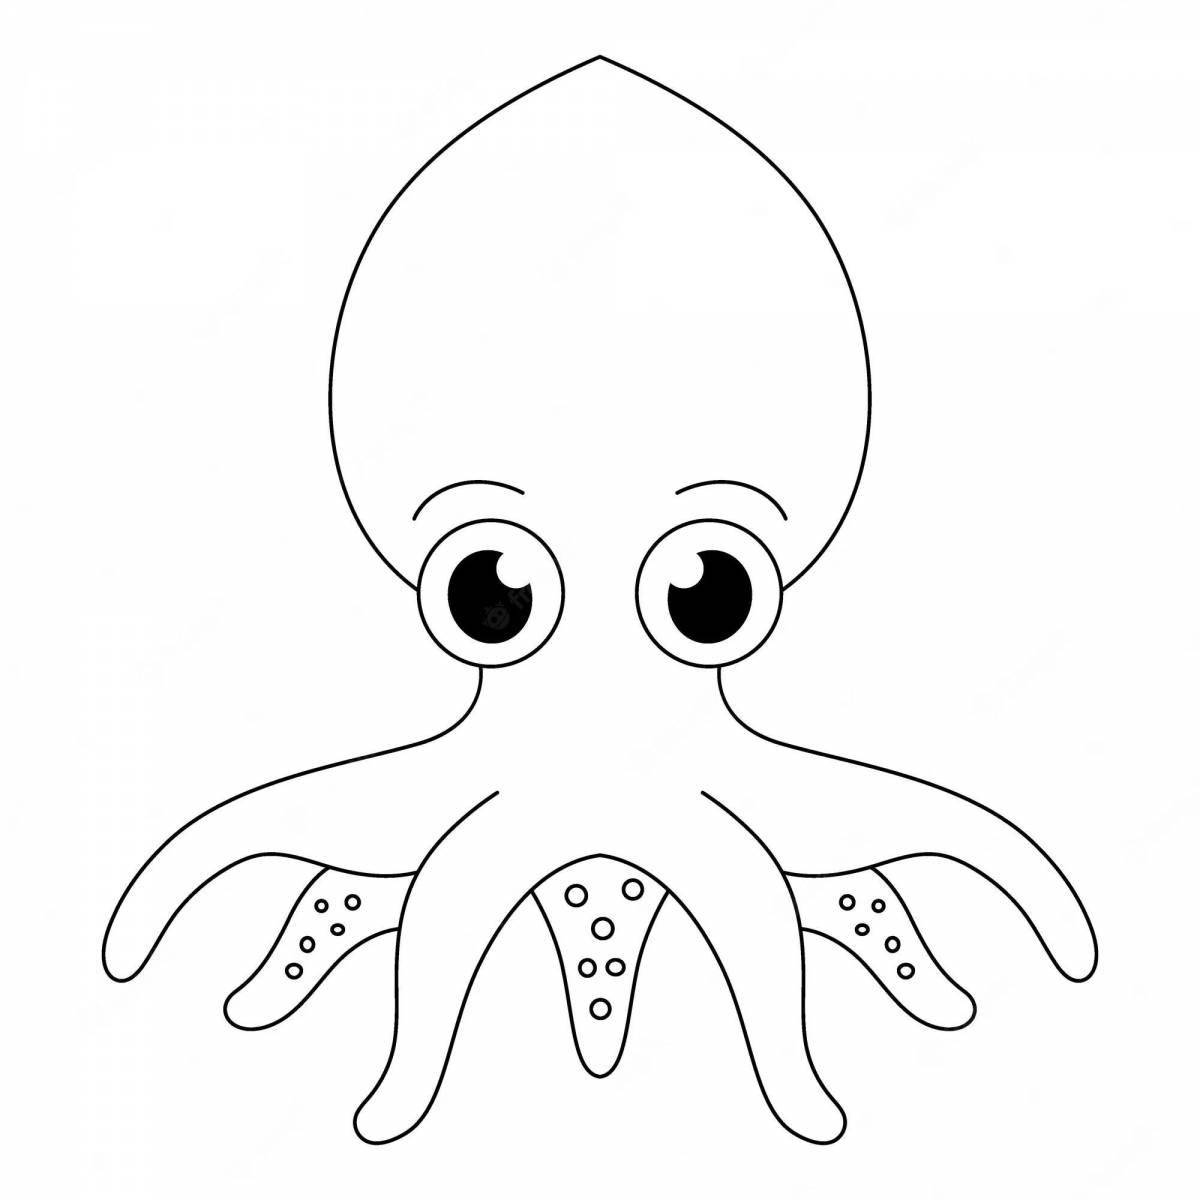 Сказочная раскраска осьминог для детей